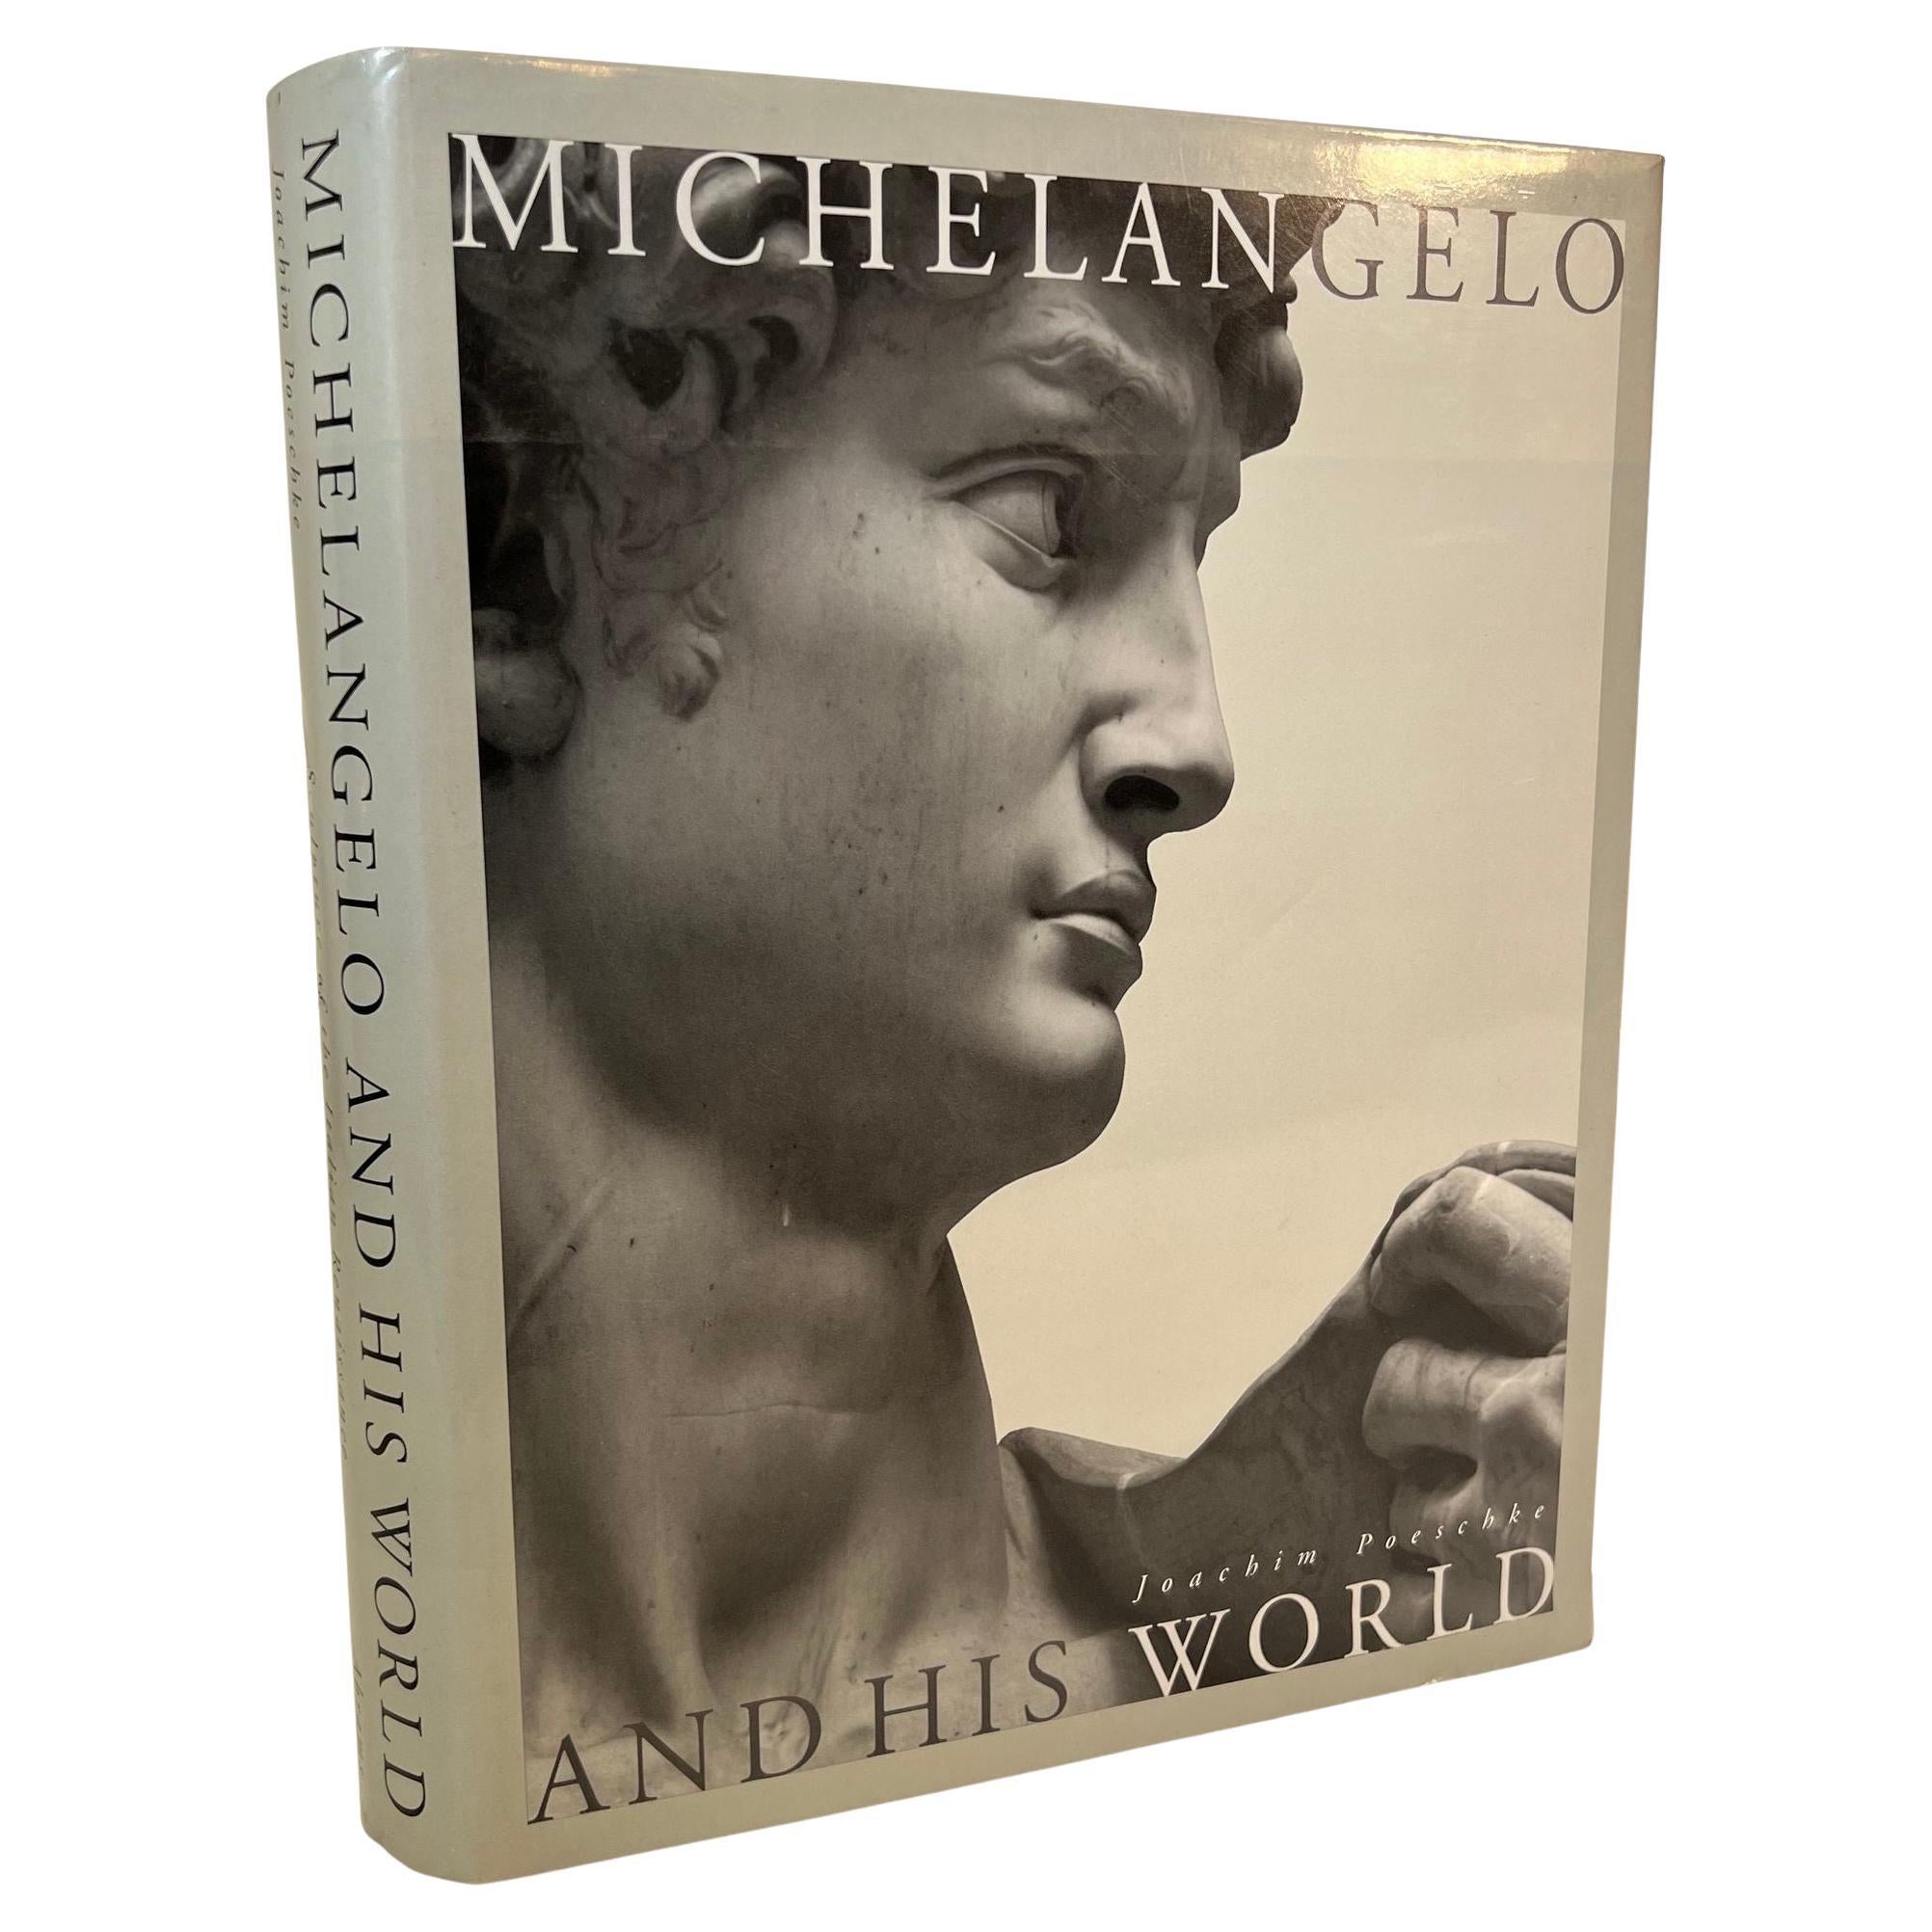 Michelangelo und seine Welt, Hardcoverbuch von Joachim Poeschke, 1996